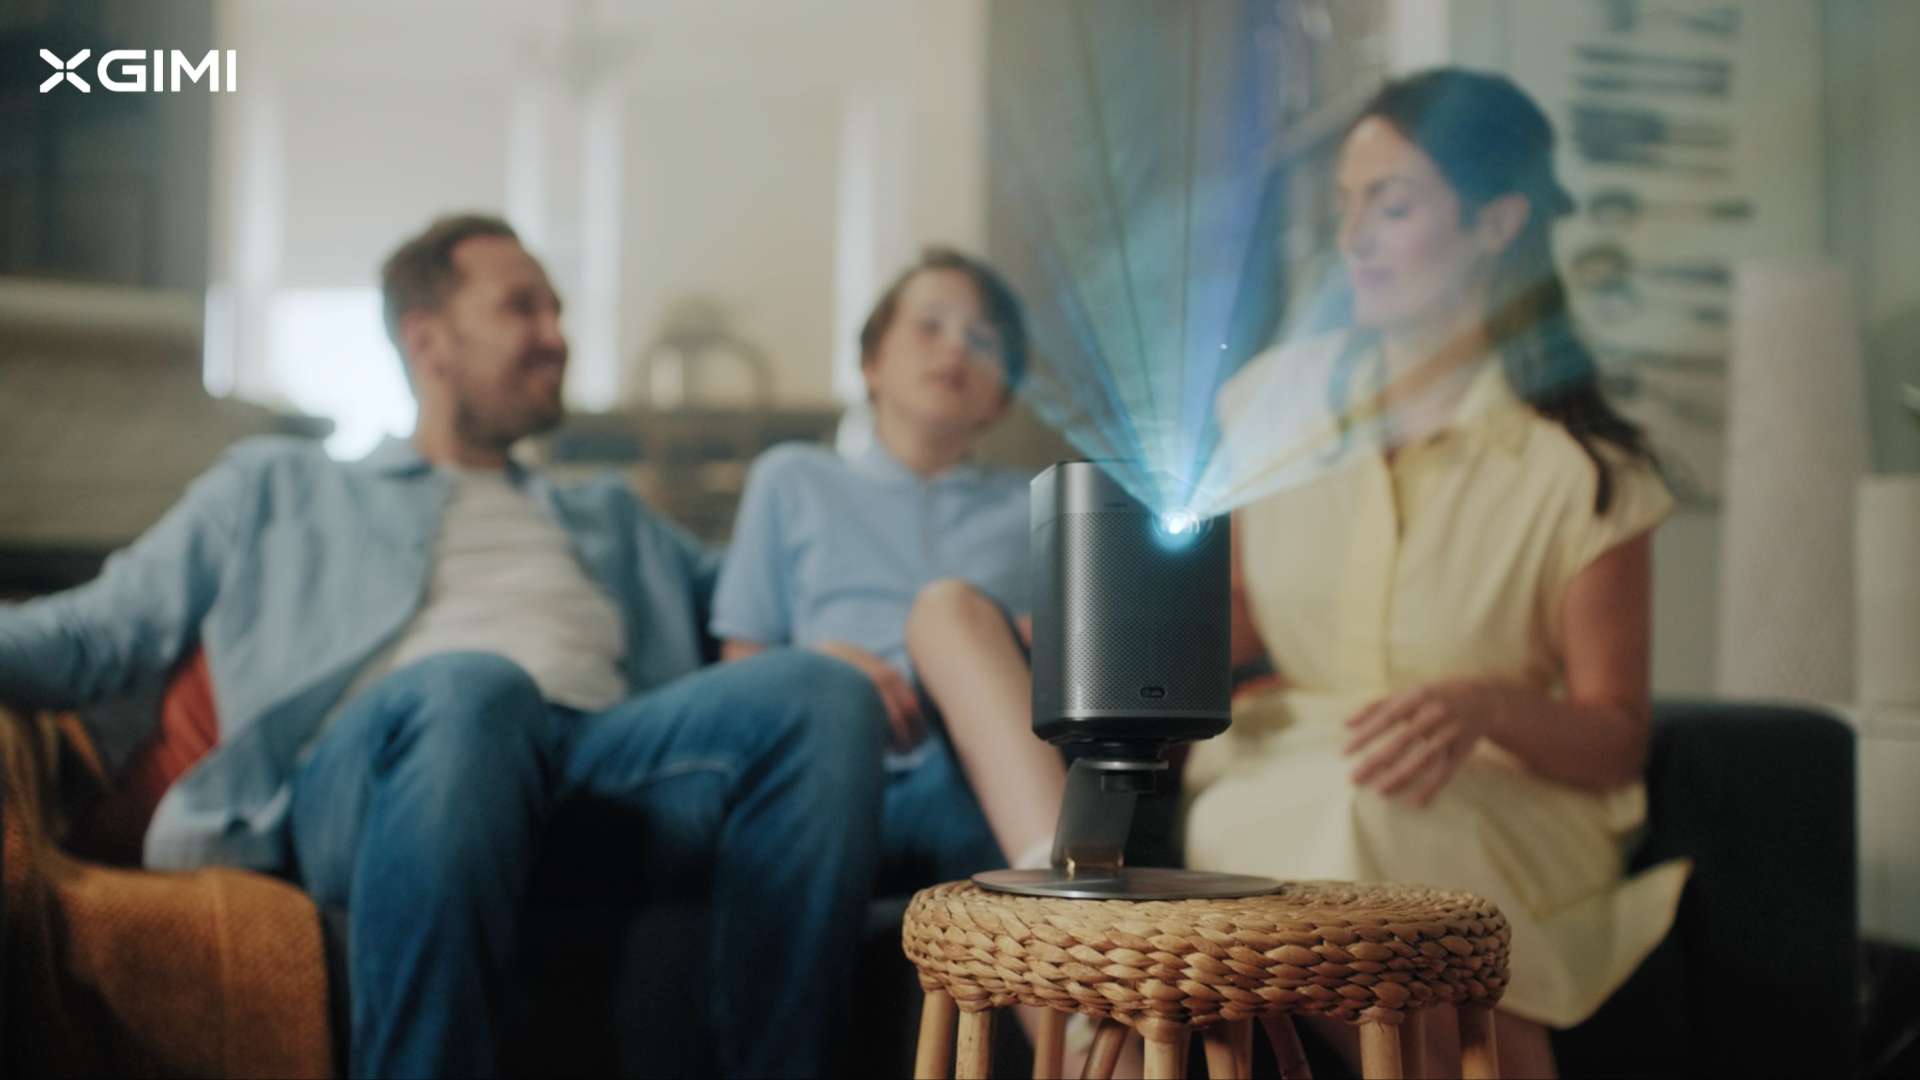 极米最新投影仪Halo 广告 | 伦敦制造